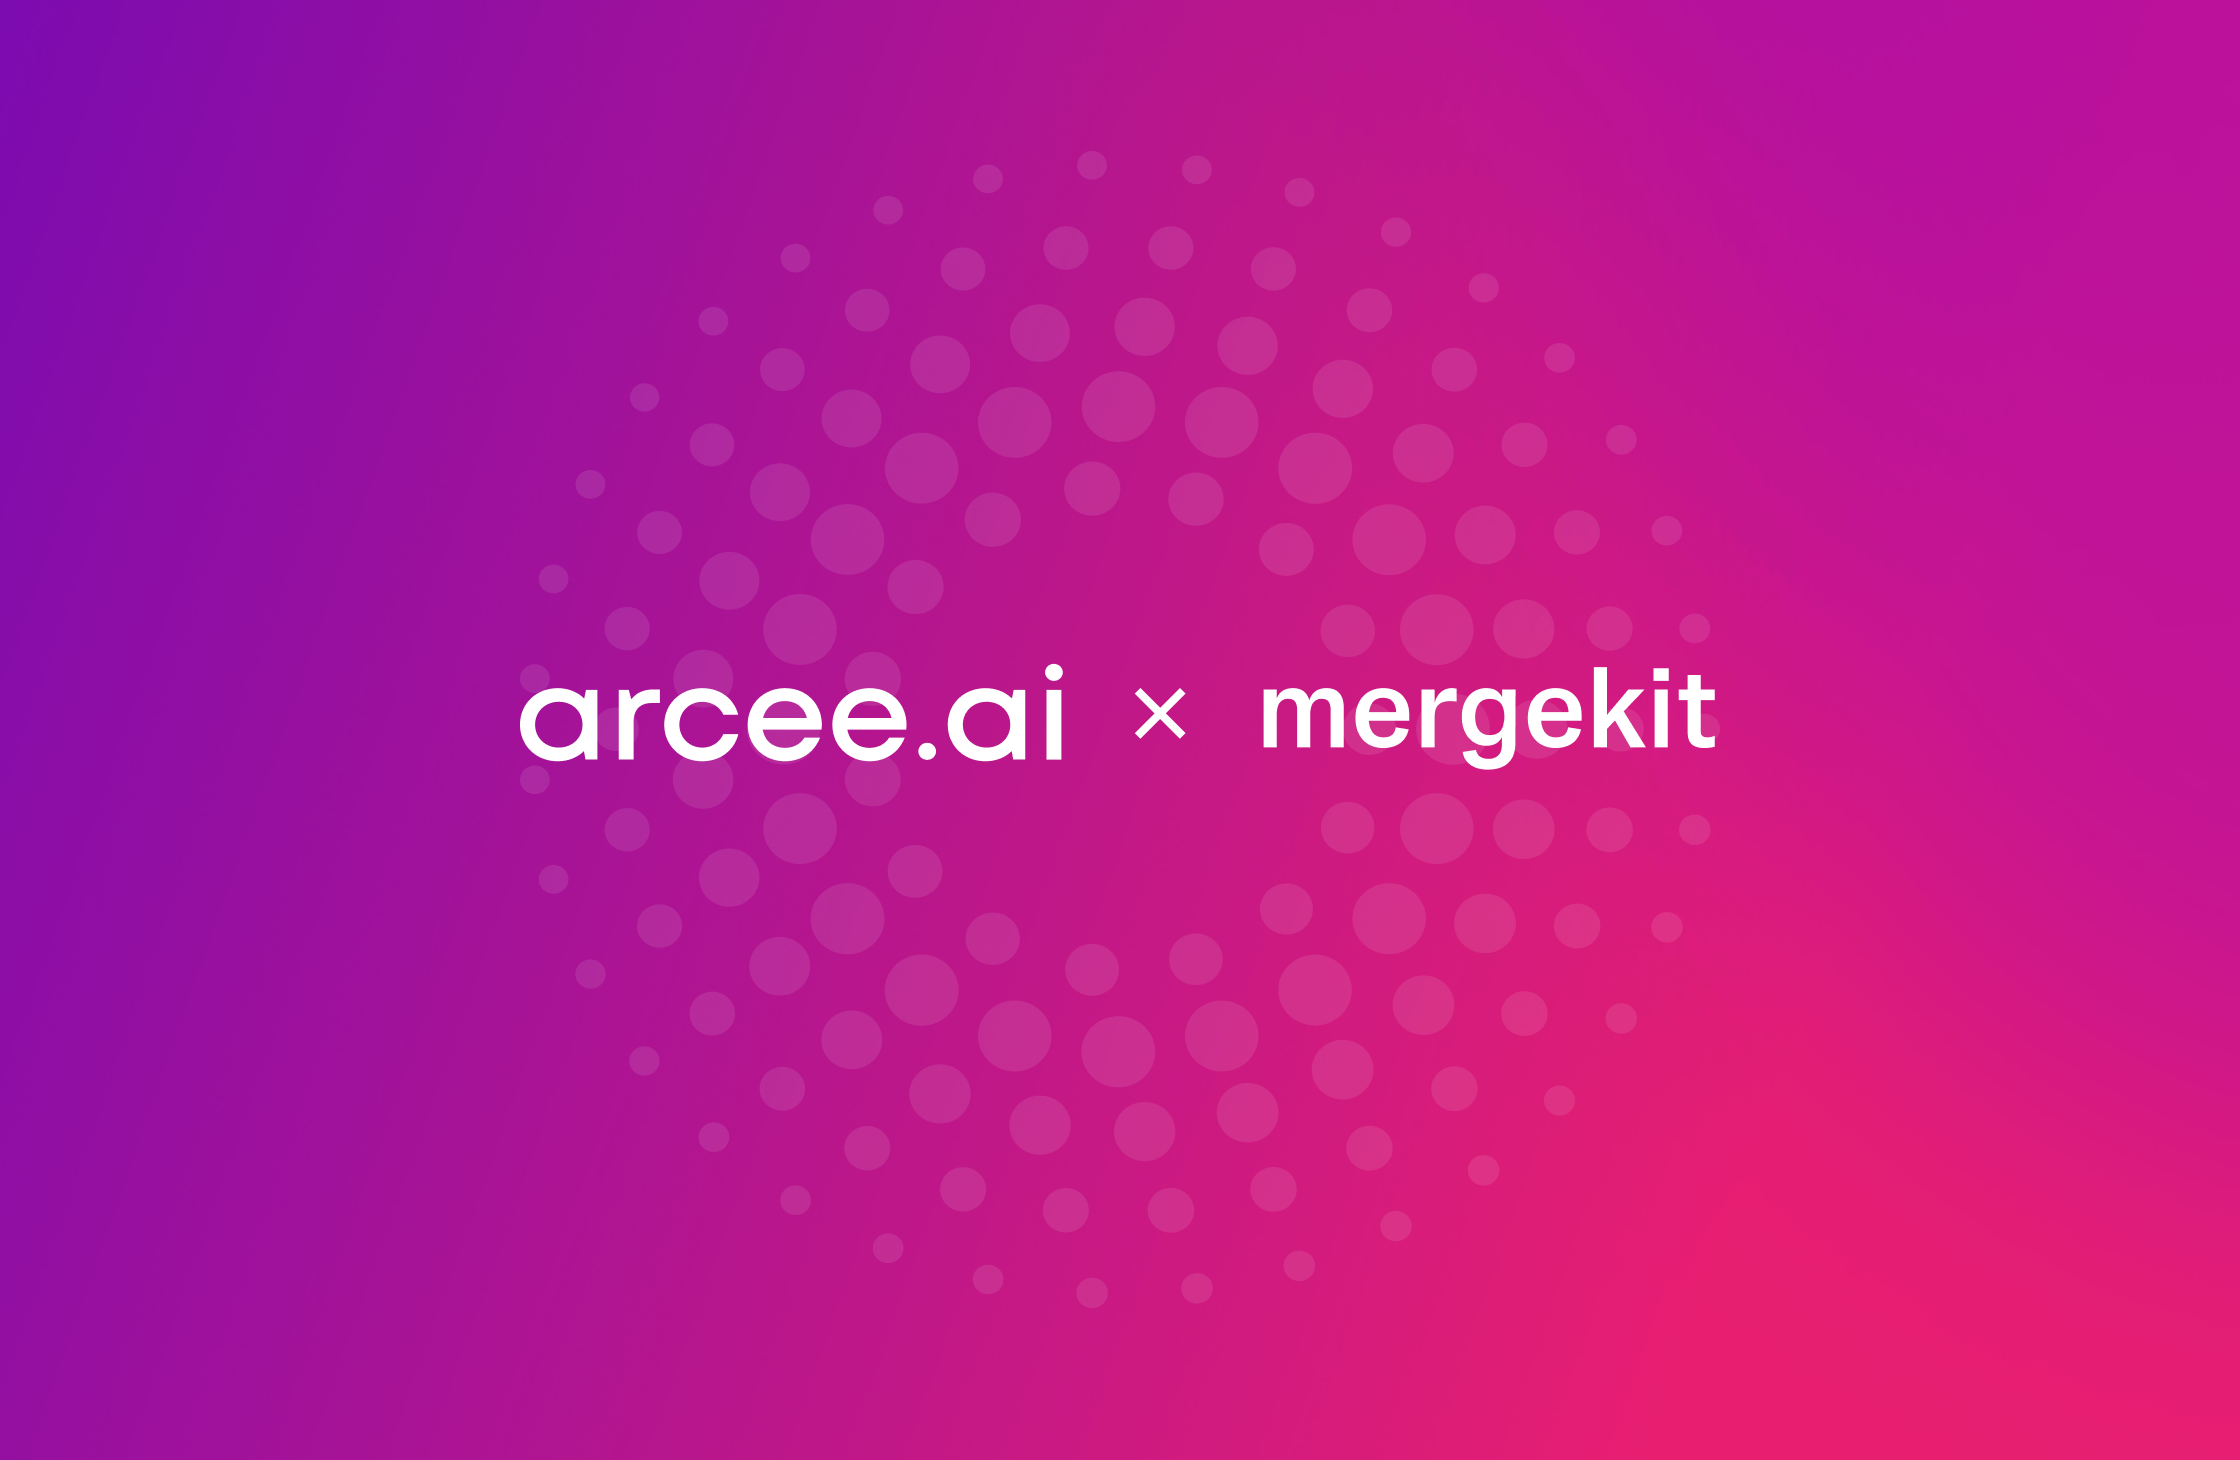 Arcee and mergekit unite